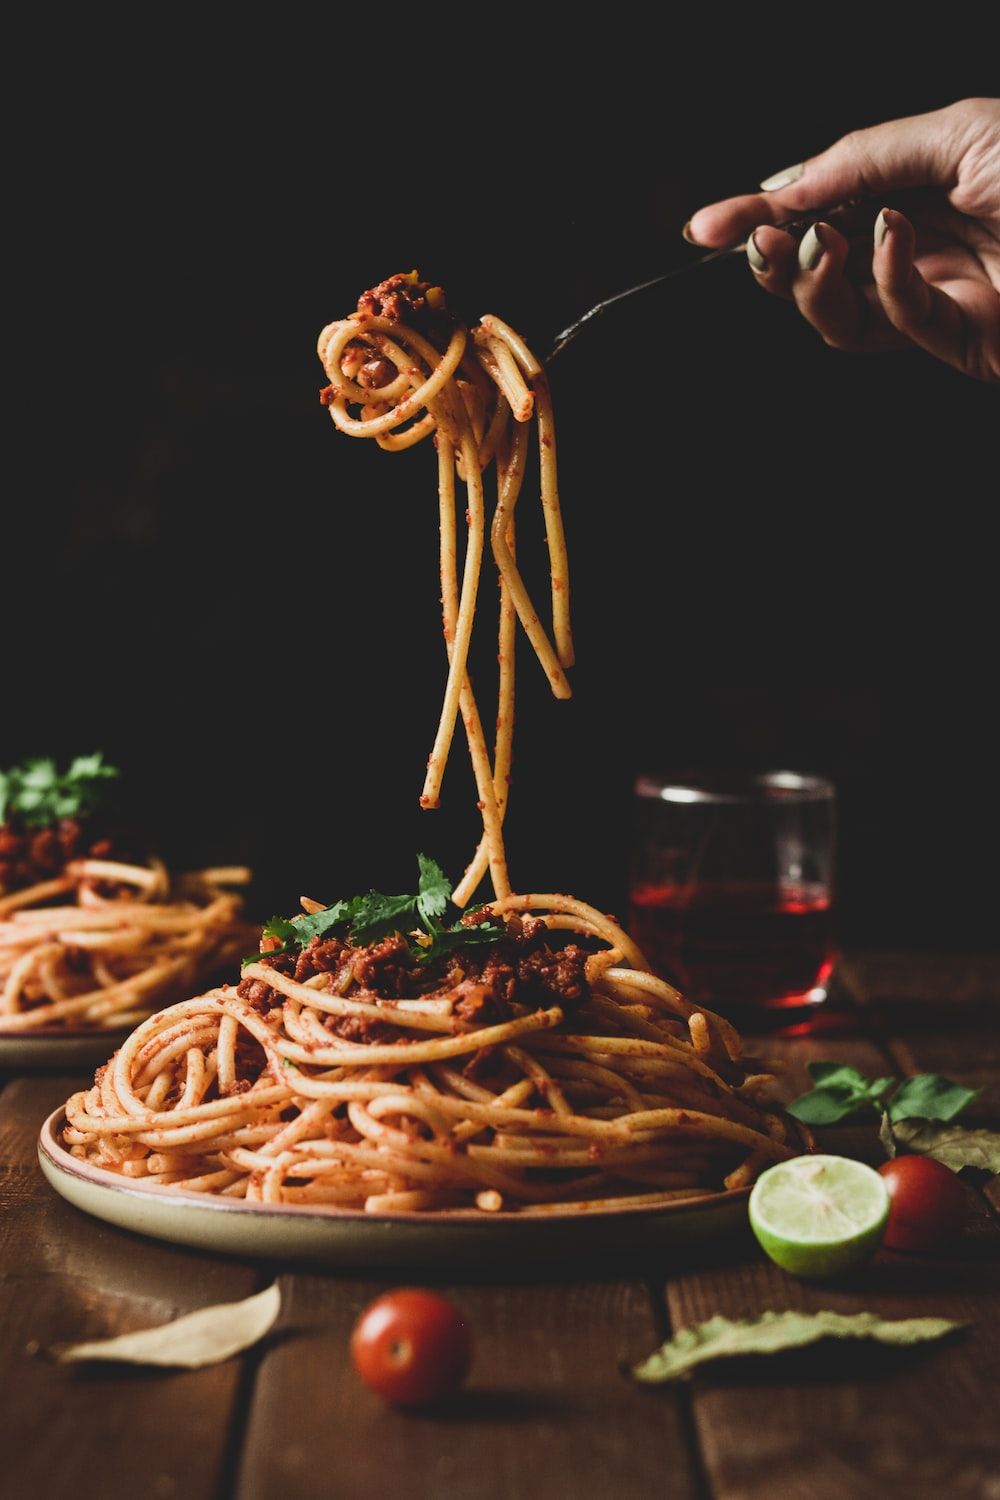  Nudeln Hintergrundbild 1000x1500. Spaghetti Picture. Download Free Image